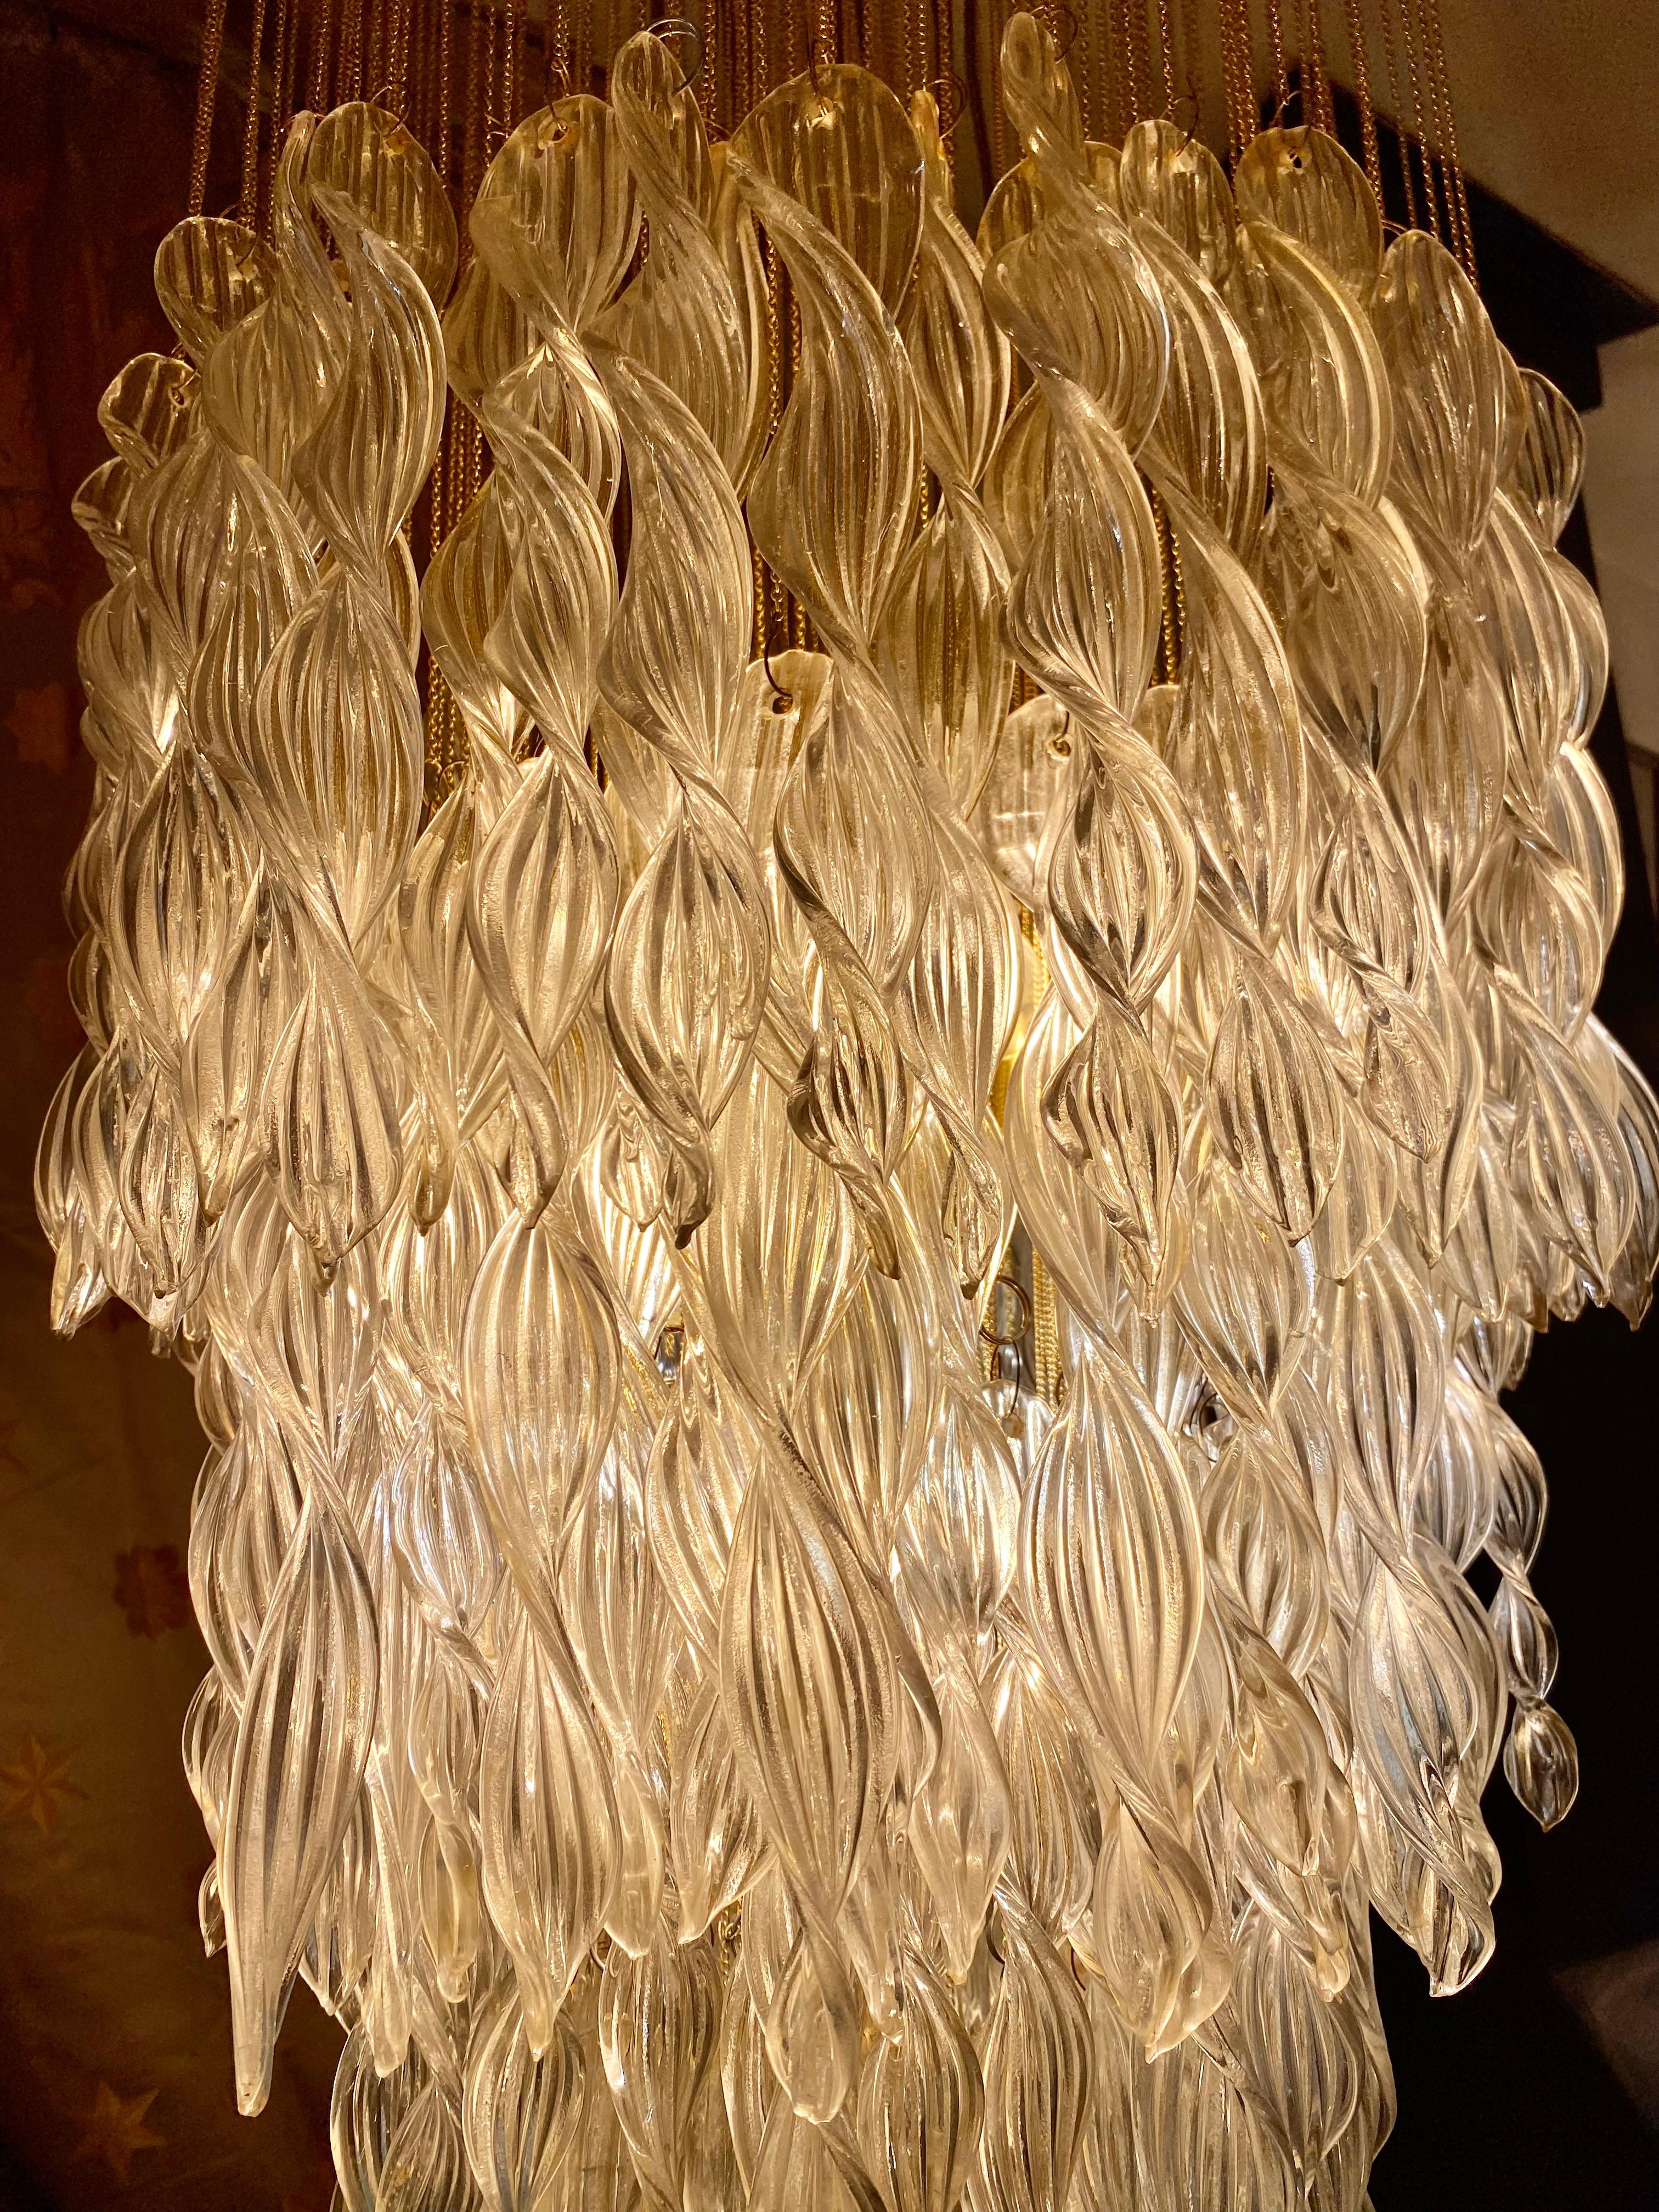 Exceptionnel pendentif en cascade avec verre à éclipse Murano by Venini surdimensionné avec structure en or doré. Le design et la qualité du verre font de cette pièce le meilleur du design italien.

Nous offrons la livraison gratuite ! 
Venini est